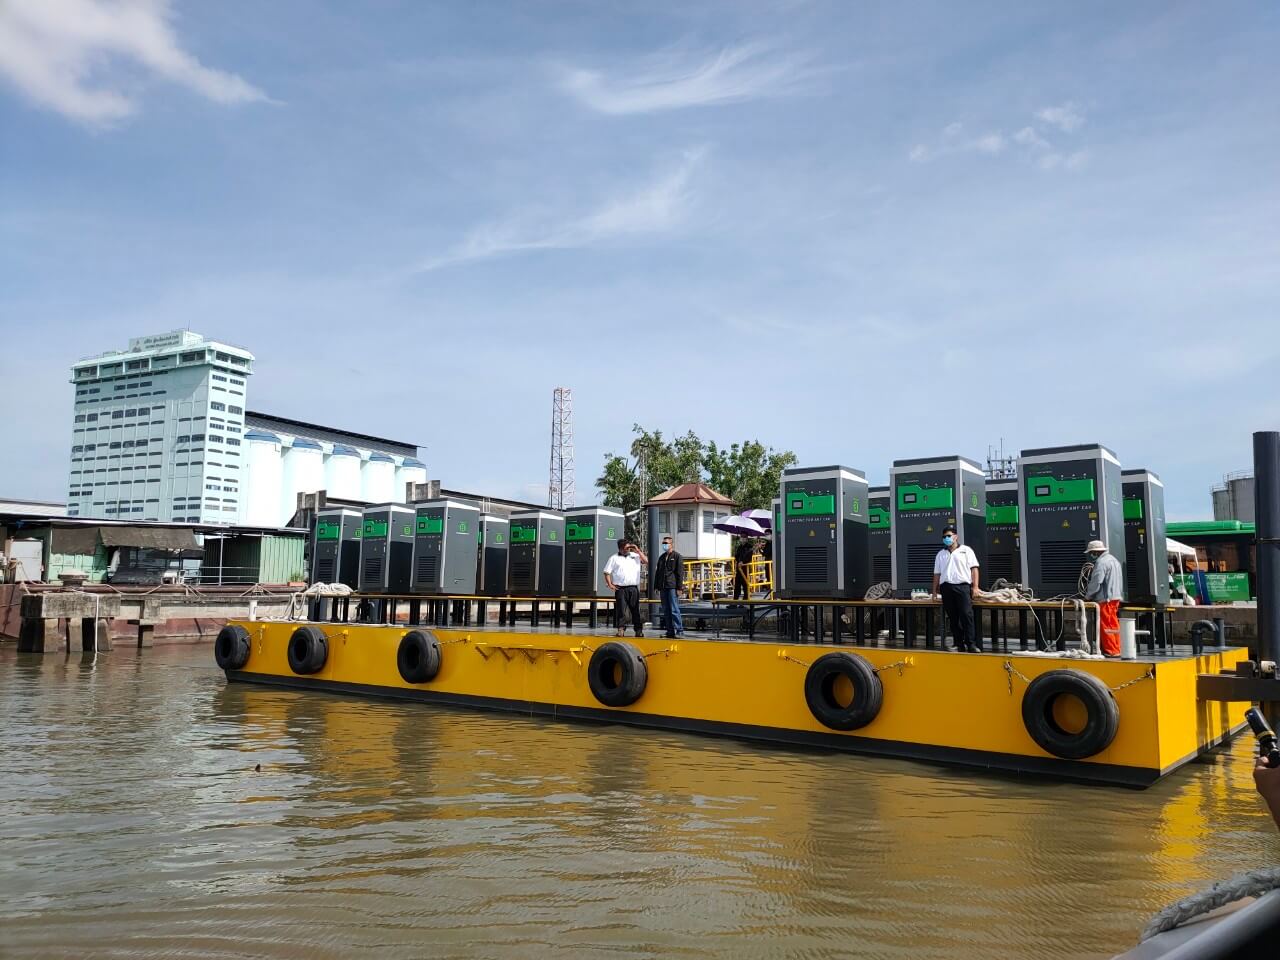 EA “MINE Smart Ferry” เรือพลังงานไฟฟ้าลำแรกของไทย พร้อมให้บริการแล้ว เดินหน้าผลิตรถบัสไฟฟ้าต้นปีหน้า